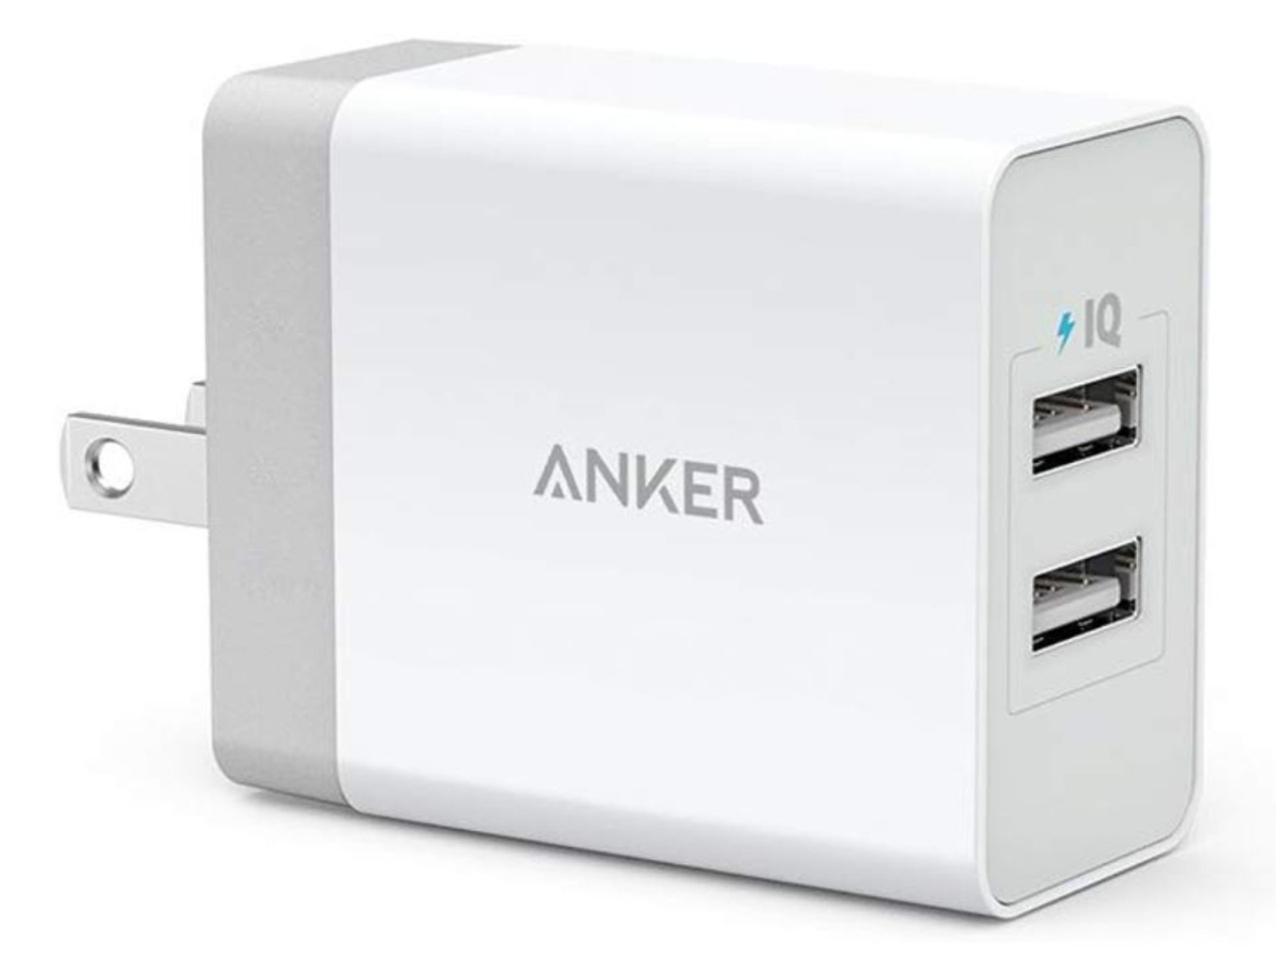 【Amazon 初売り】1,000円台のAnker製USB急速充電器や3,000円台・42%オフのFire 7 タブレットがお買い得に